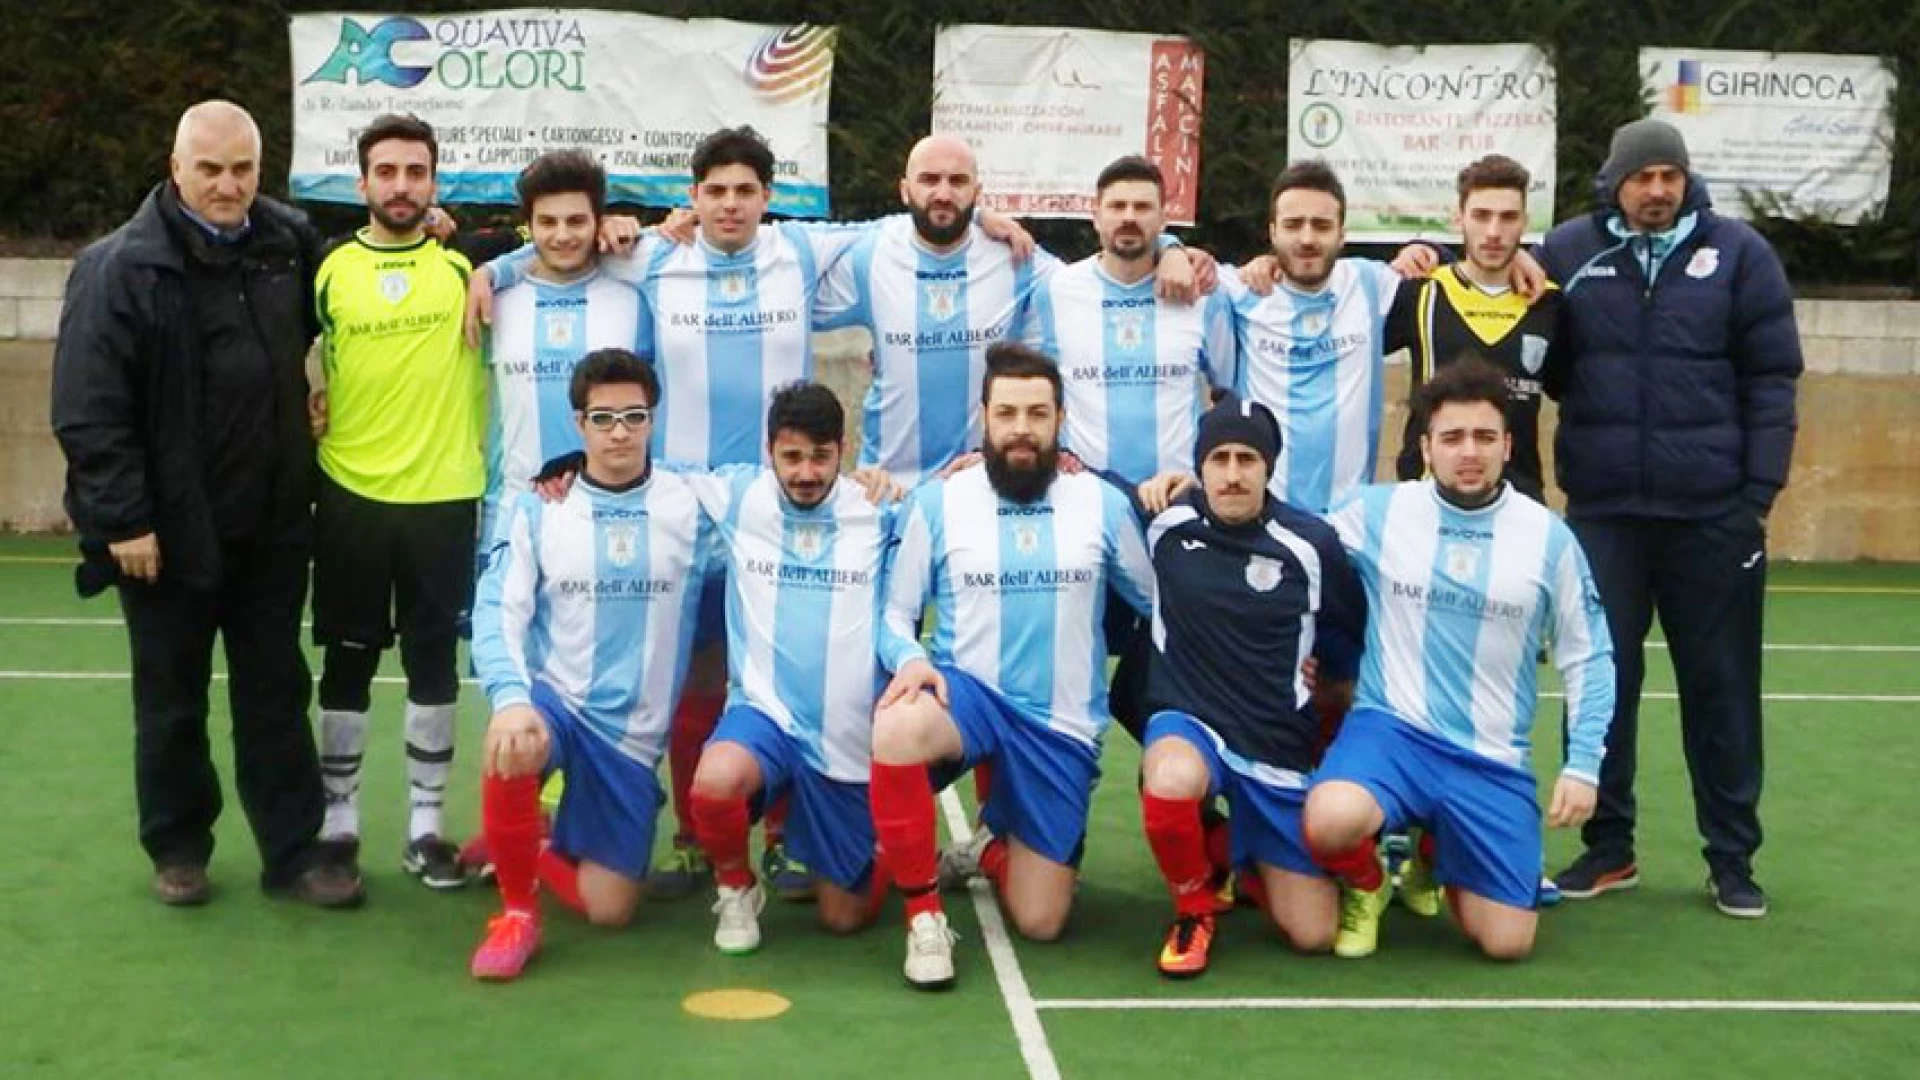 Calcio a 5: la Futsal Acquaviva sconfigge il Termoli per 9 a 4. Tre punti importanti per la salvezza diretta.